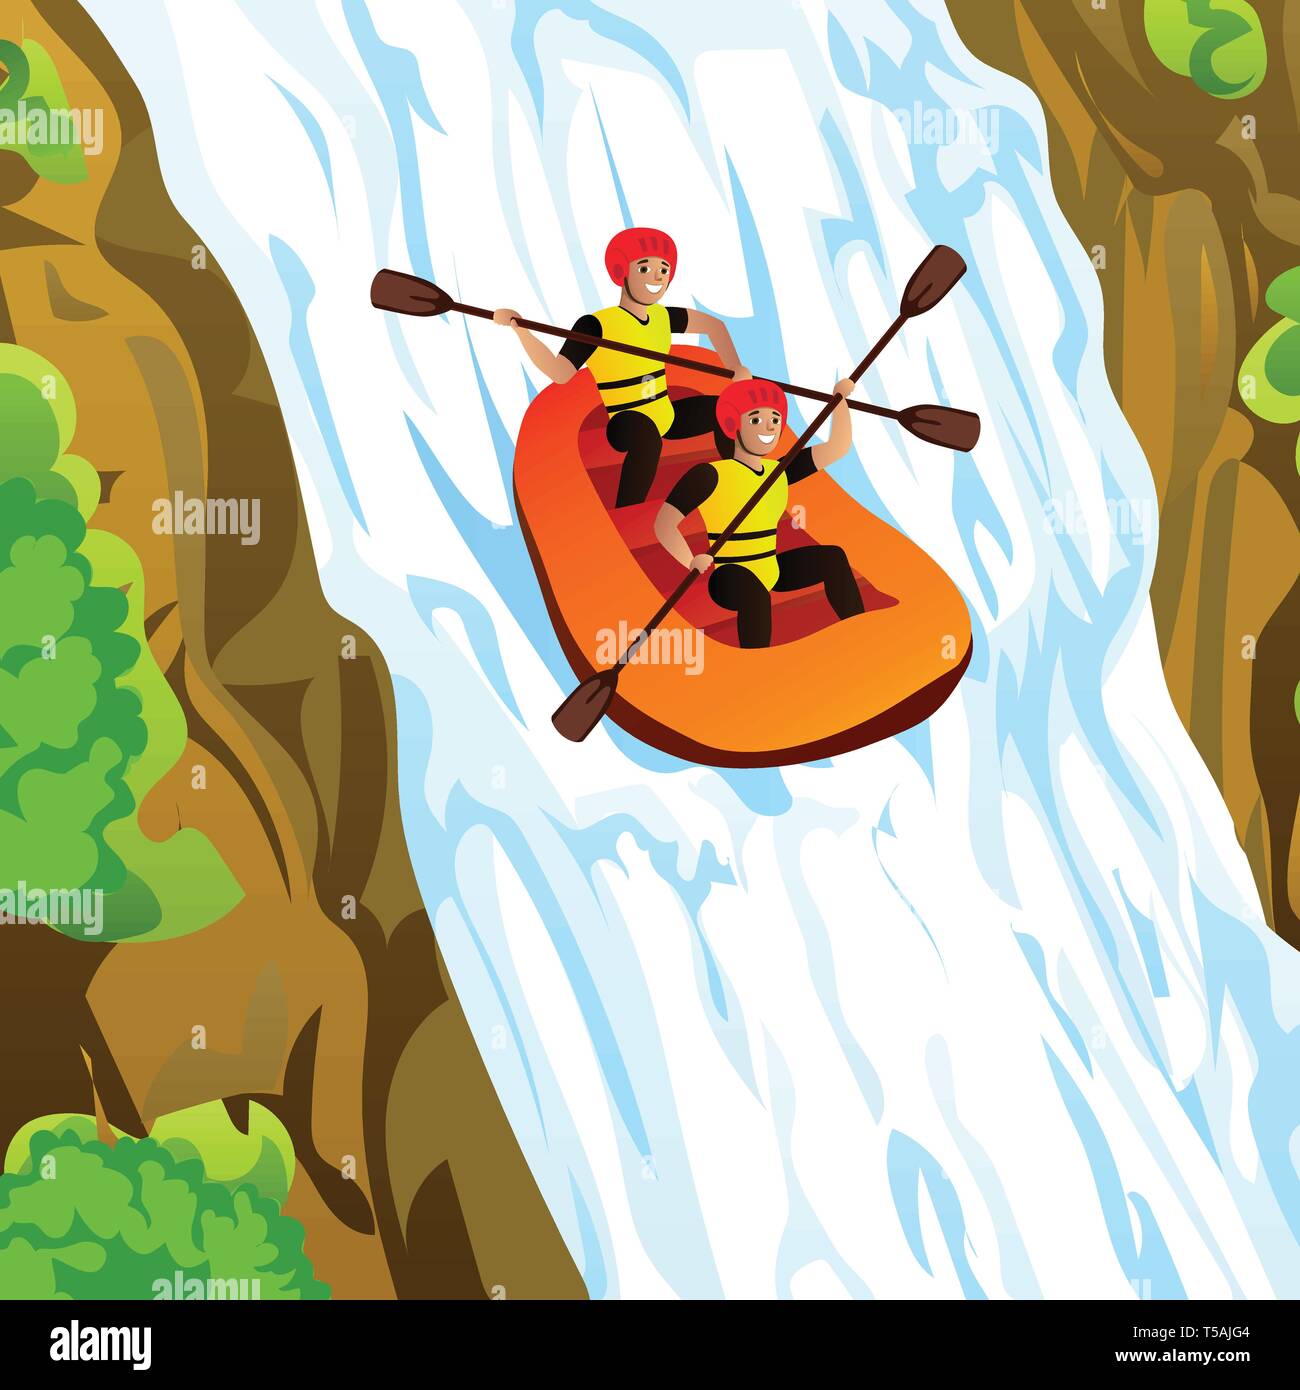 Freunde Rafting in den Bergen Konzept Hintergrund. Cartoon Illustration von Freunden Rafting in den Bergen vektor Konzept Hintergrund für Web Design Stock Vektor